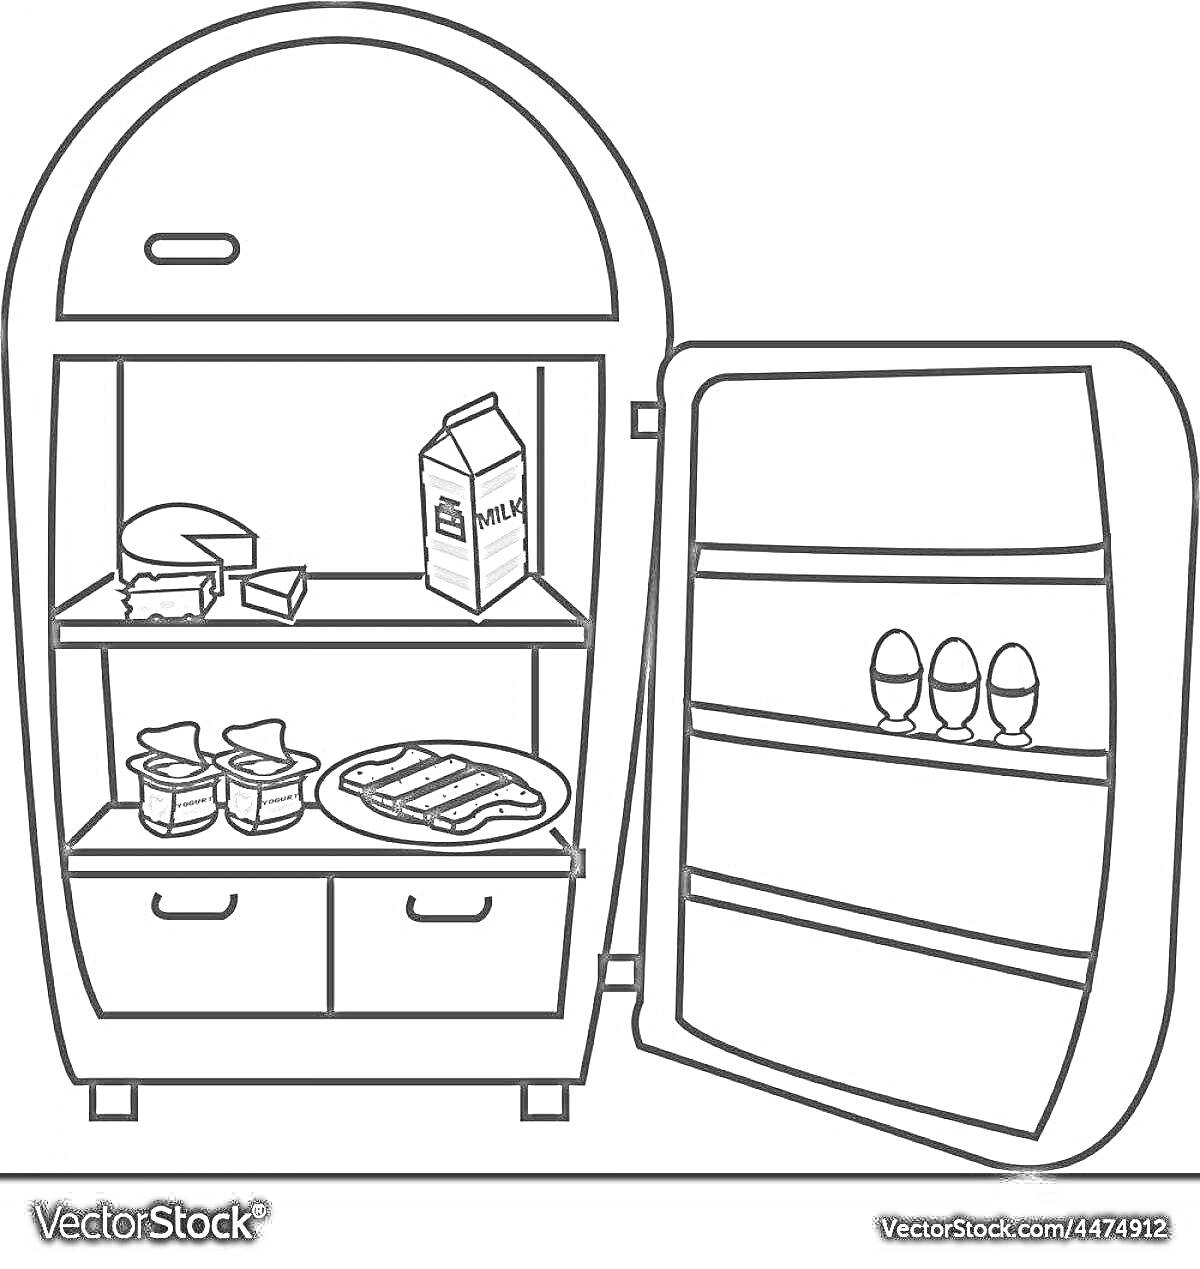 Раскраска Холодильник с продуктами: молоко, сыр, яйца, йогурт, бекон